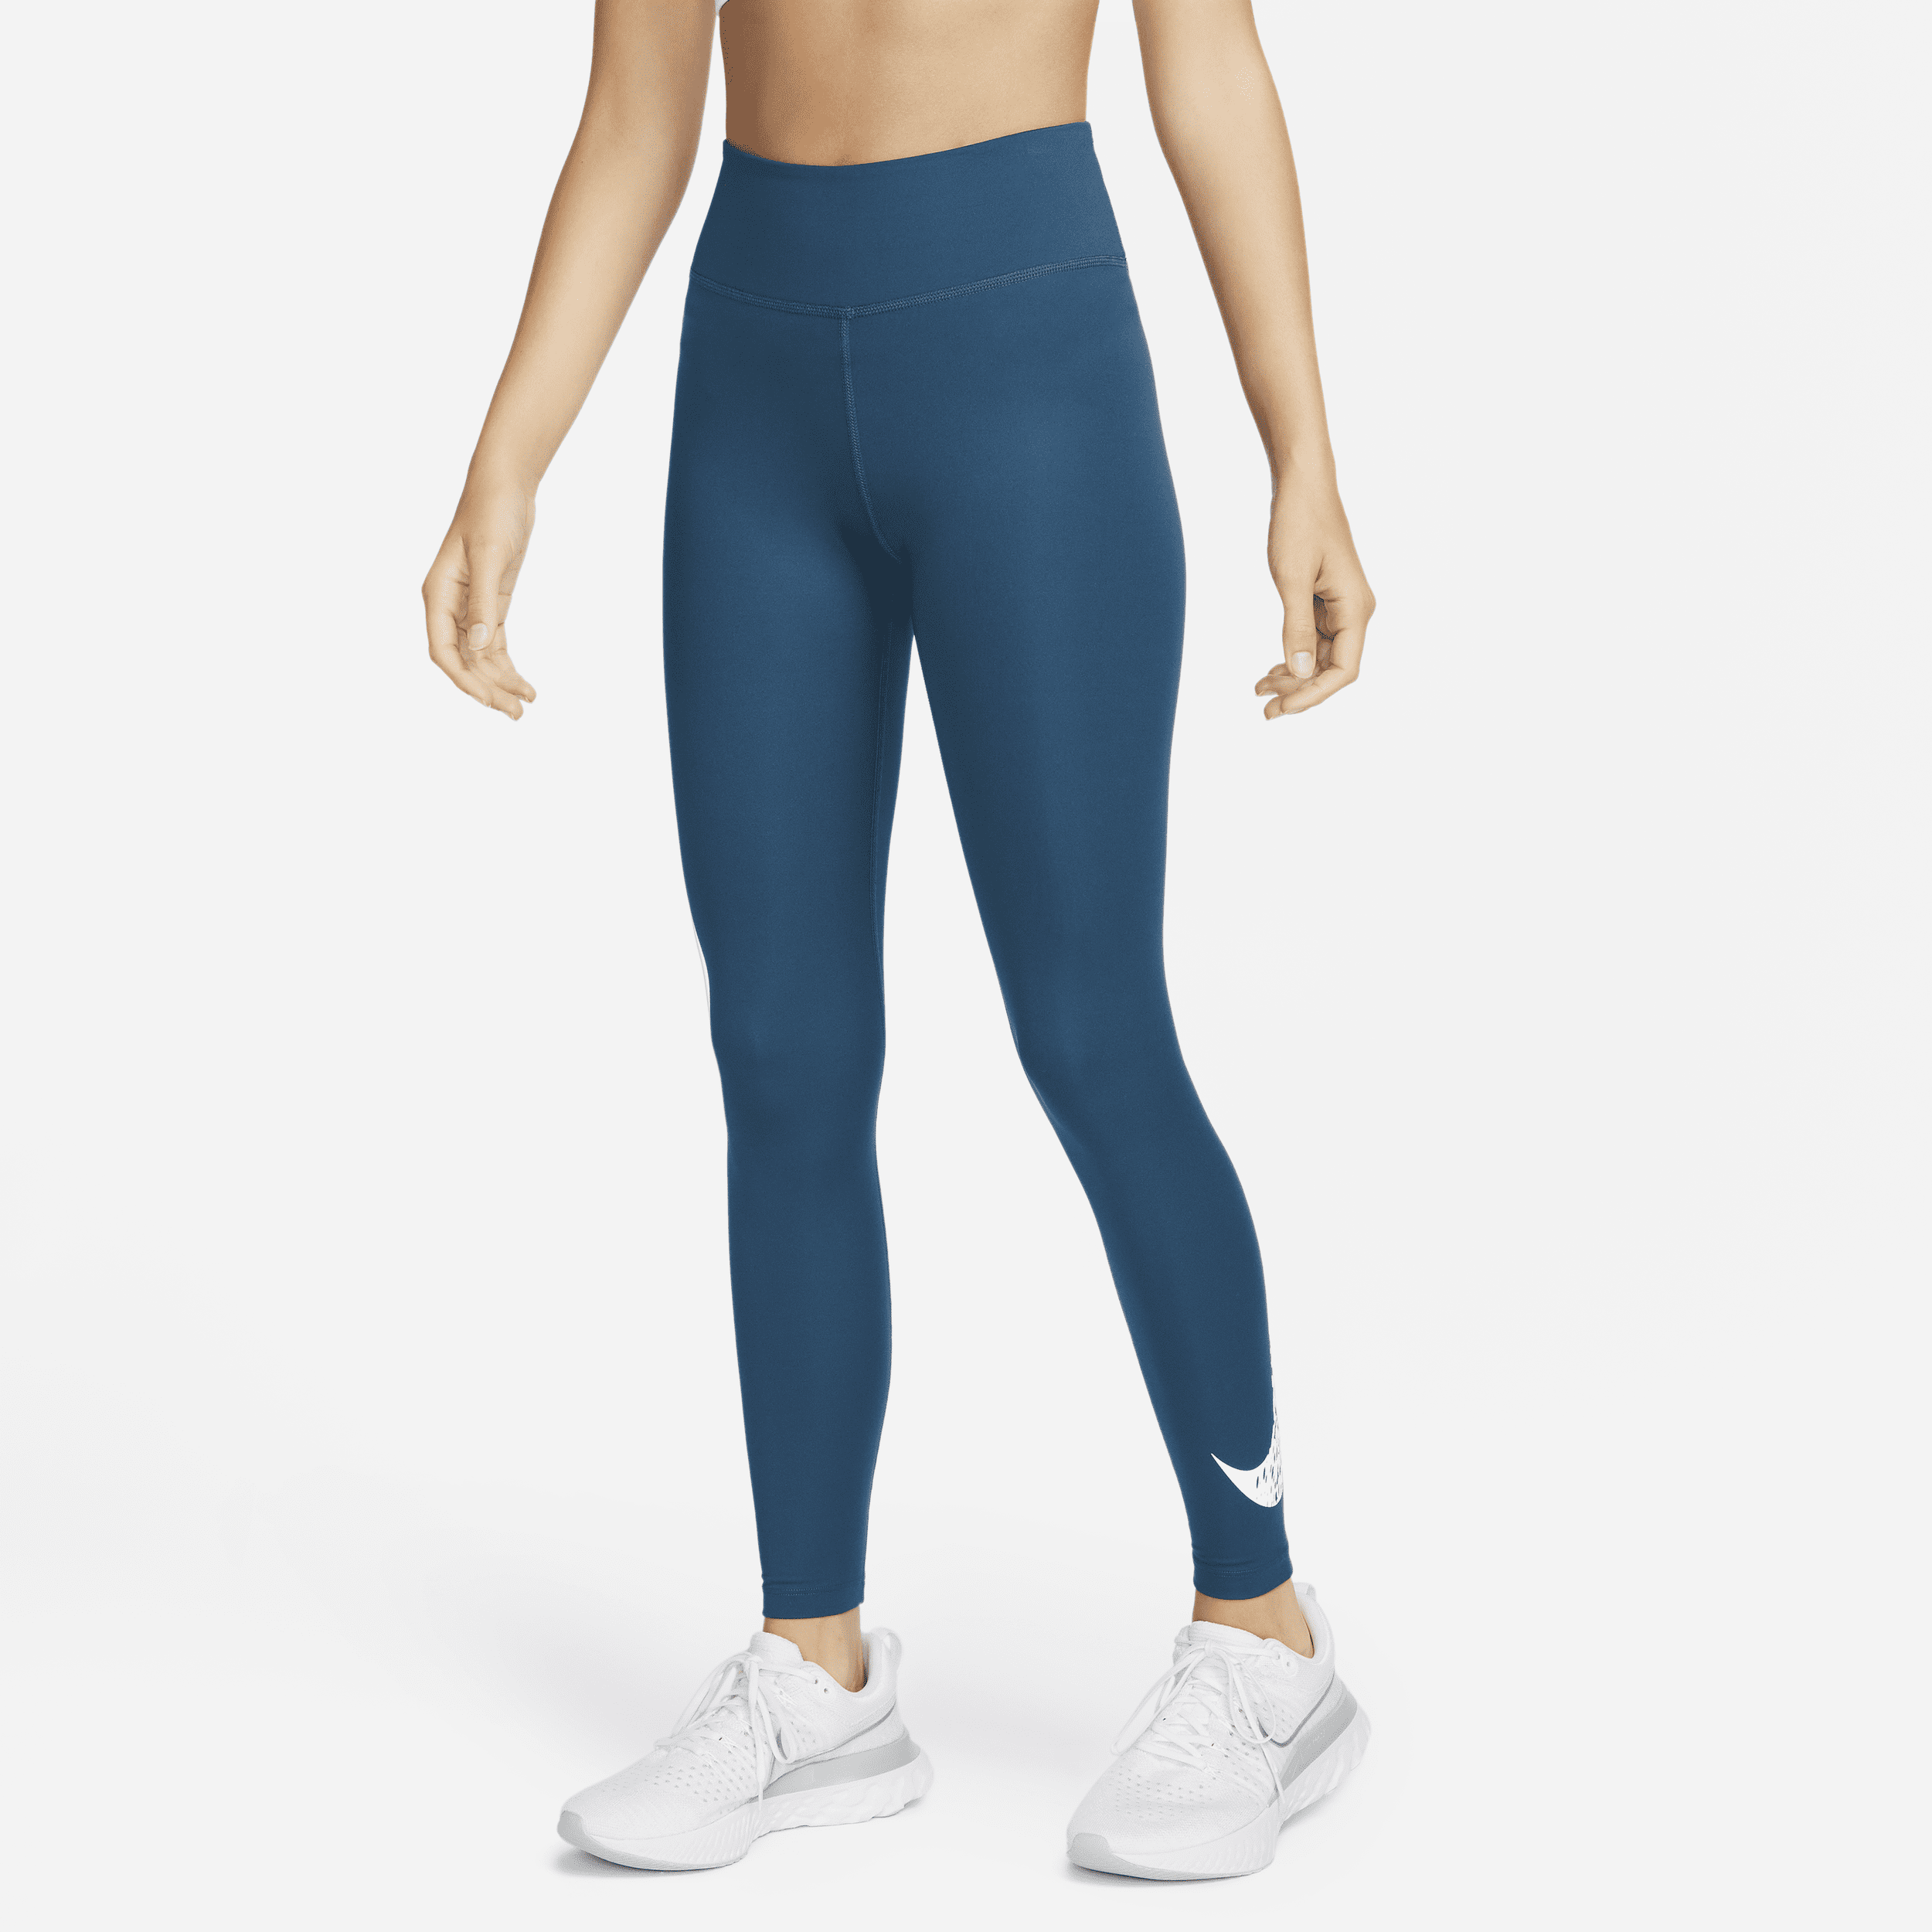 Nike Swoosh Run 7/8-hardlooplegging met halfhoge taille voor dames - Blauw